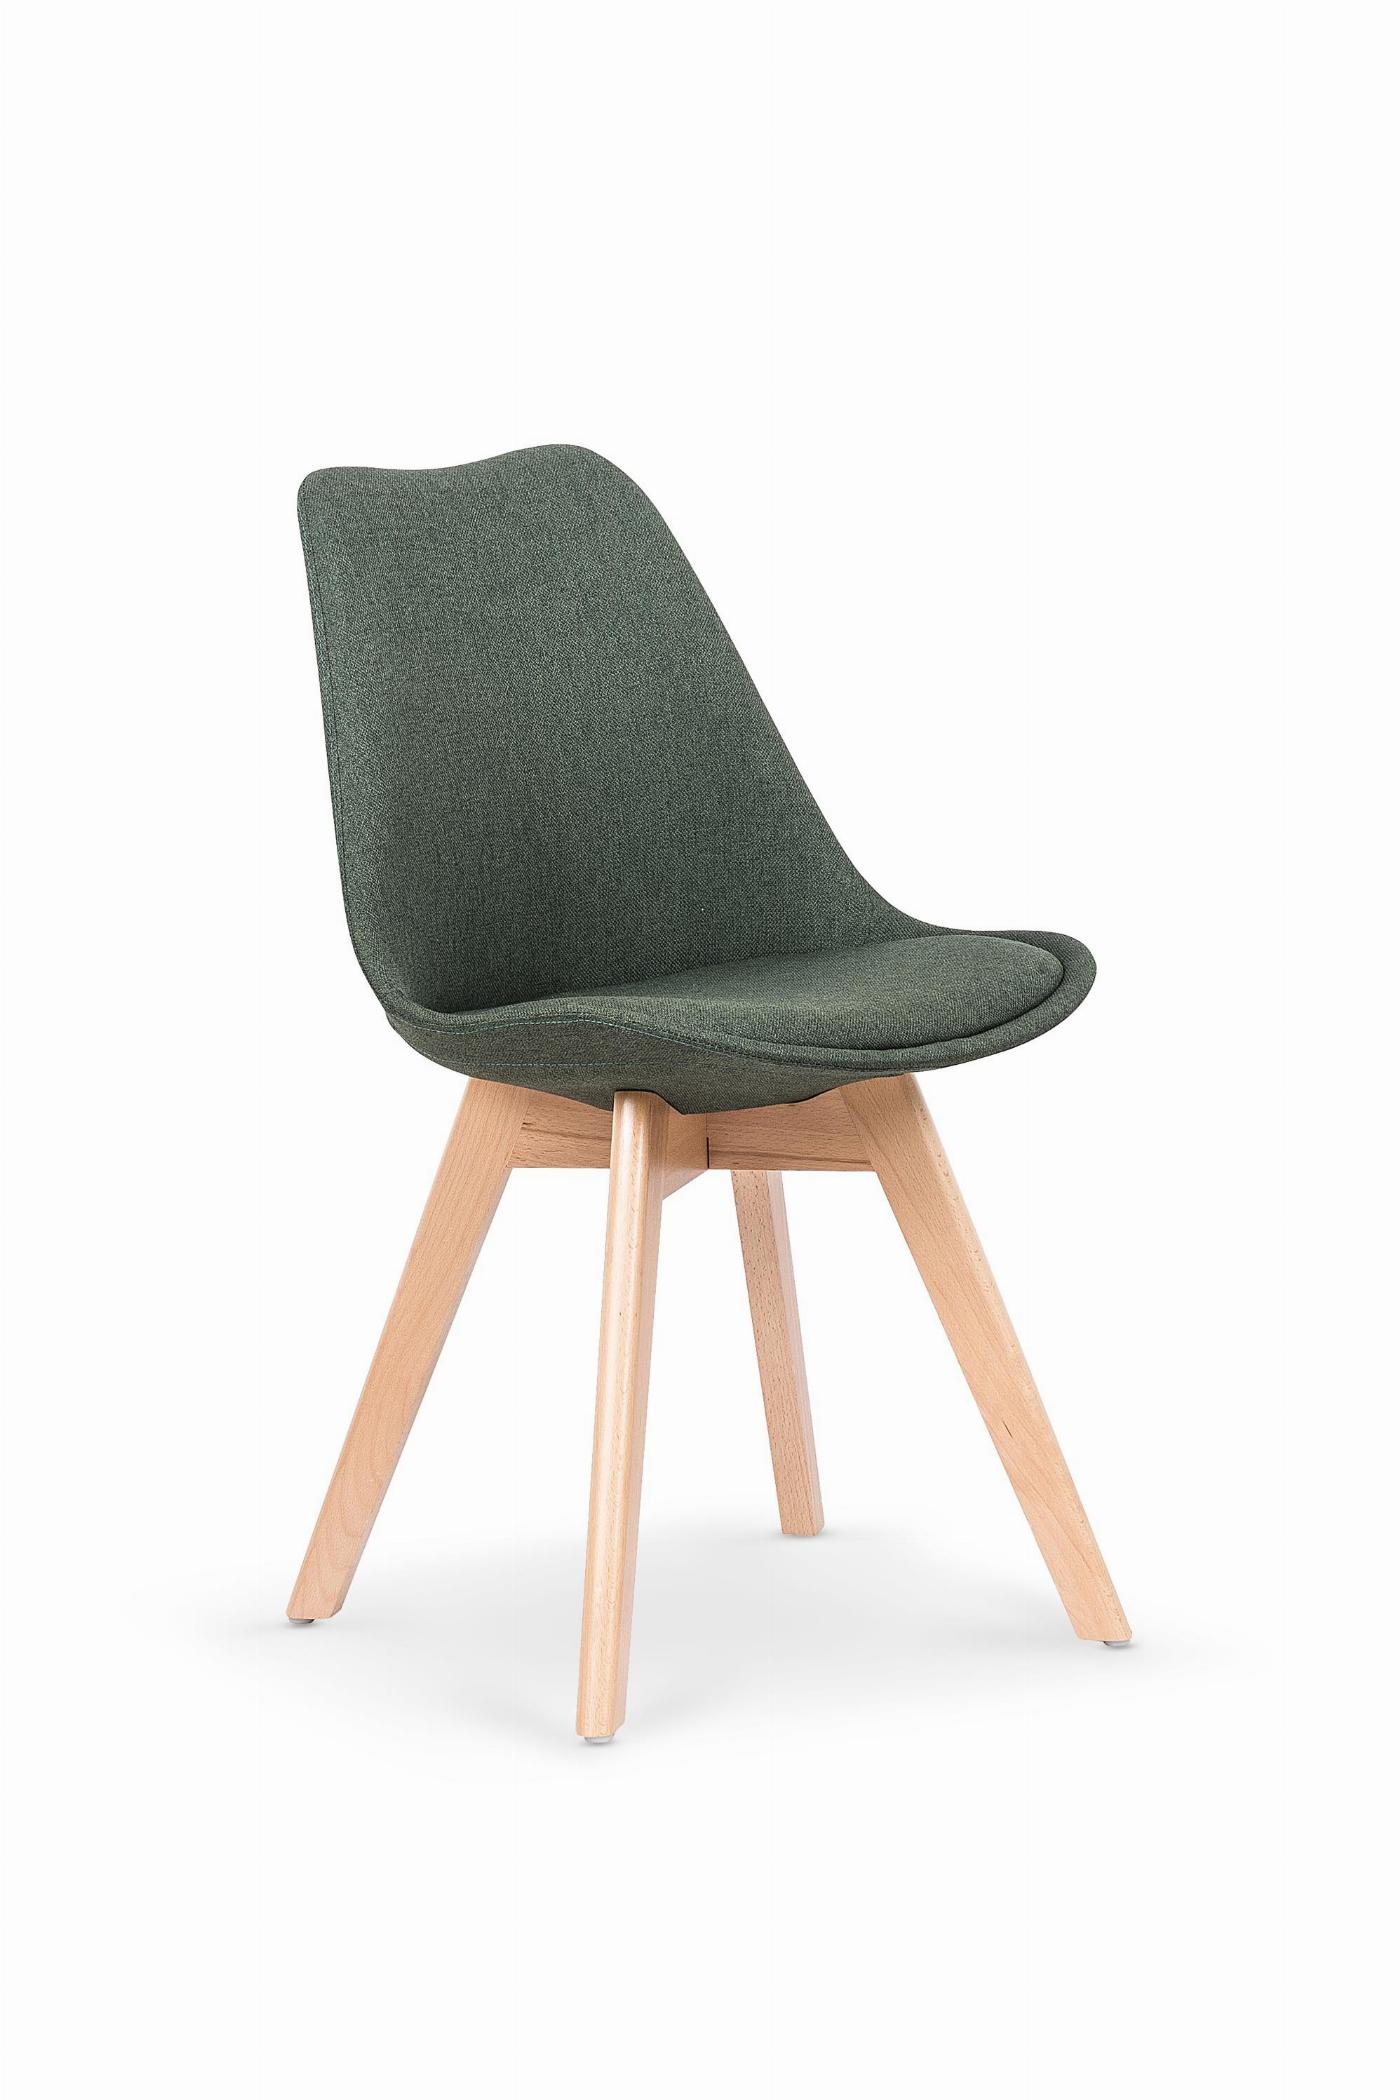 K303 krzesło ciemny zielony / buk